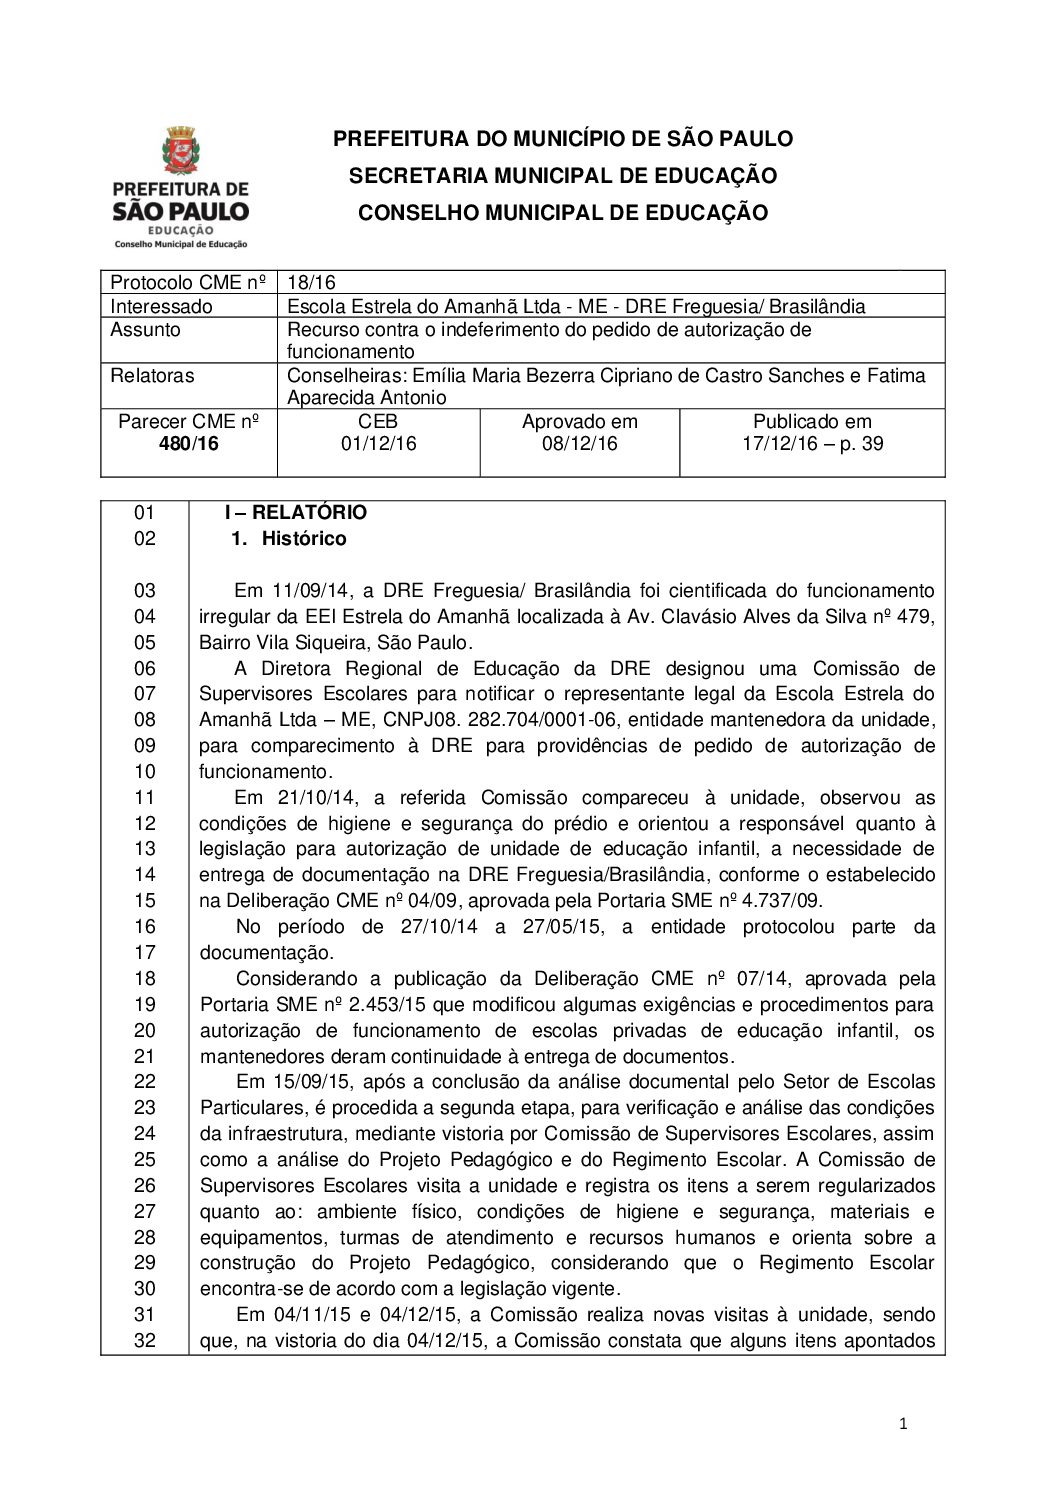 Parecer CME nº 480/2016 - Escola Estrela do Amanhã Ltda ME (DRE Freguesia/Brasilândia) - Recurso contra o indeferimento do pedido de autorização de funcionamento 